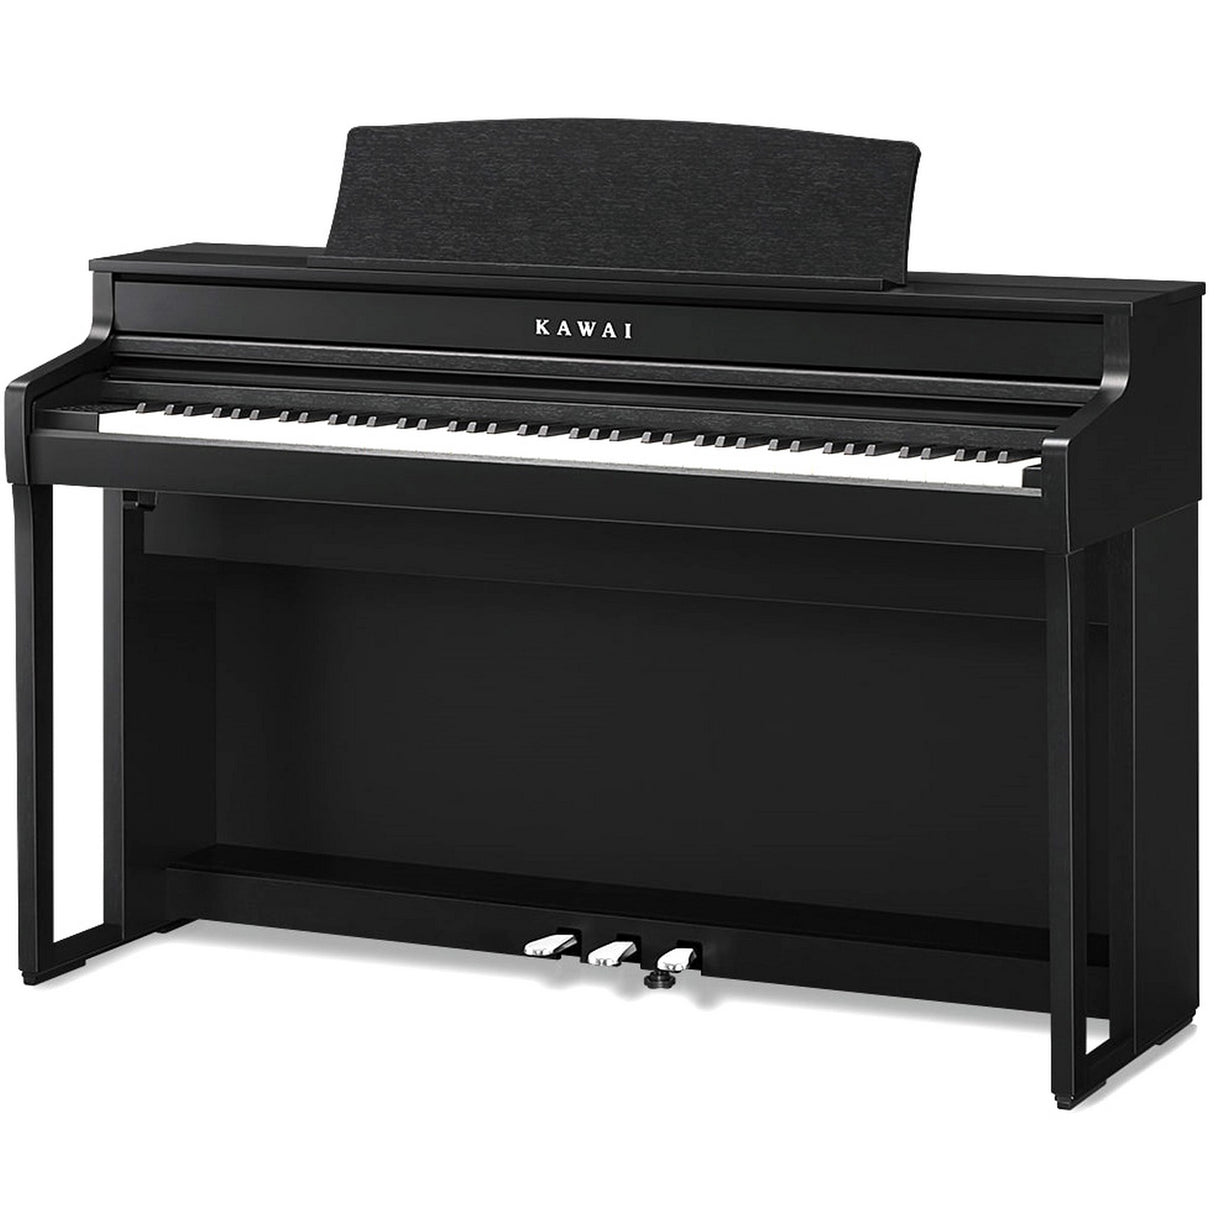 Kawai CA501 88-Key Compact Digital Piano with Bench, Satin Black